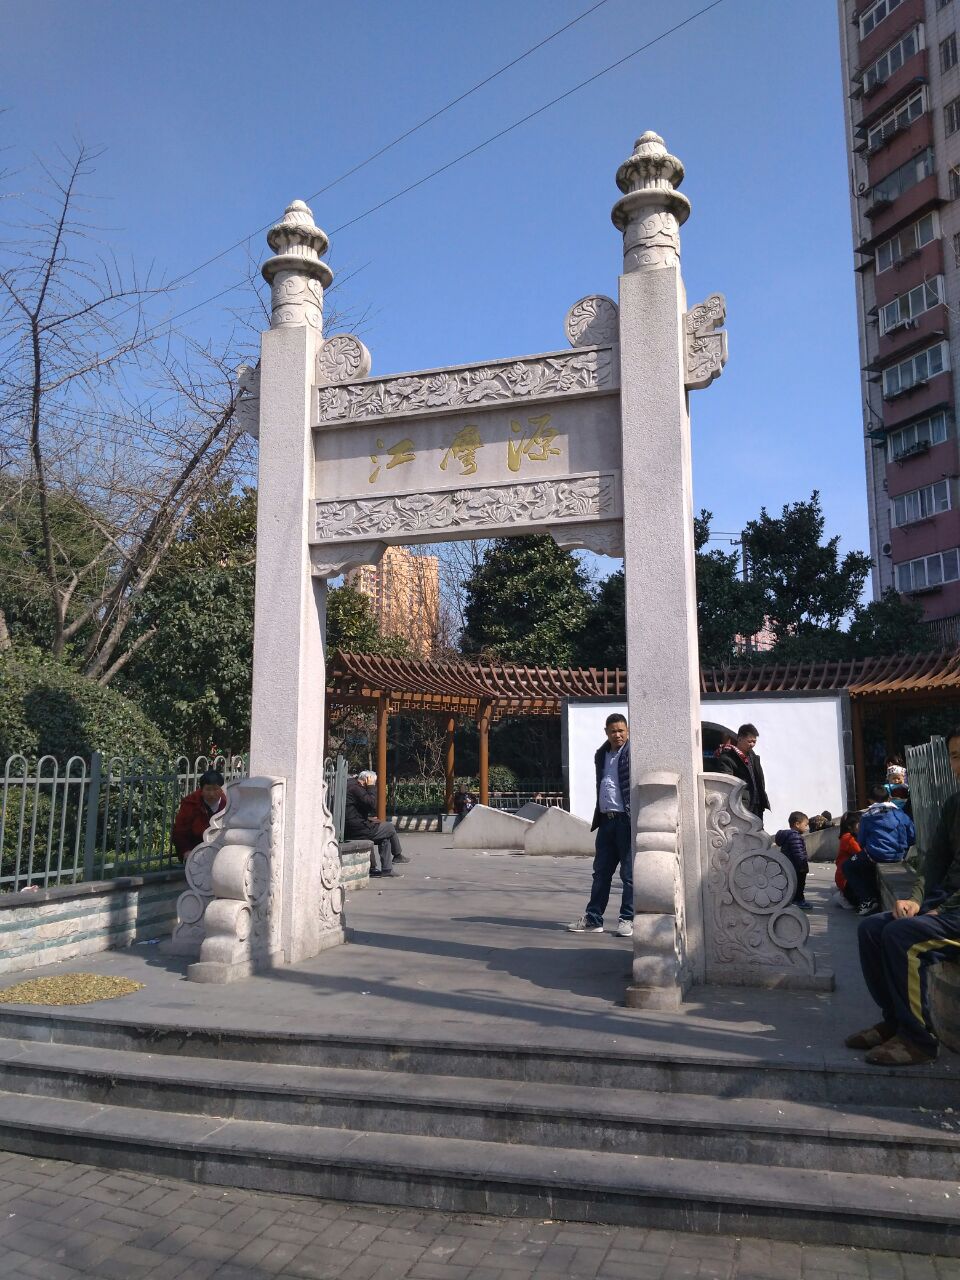 【携程攻略】上海江湾古镇景点,上海市虹口区江湾古镇,是一个有悠久